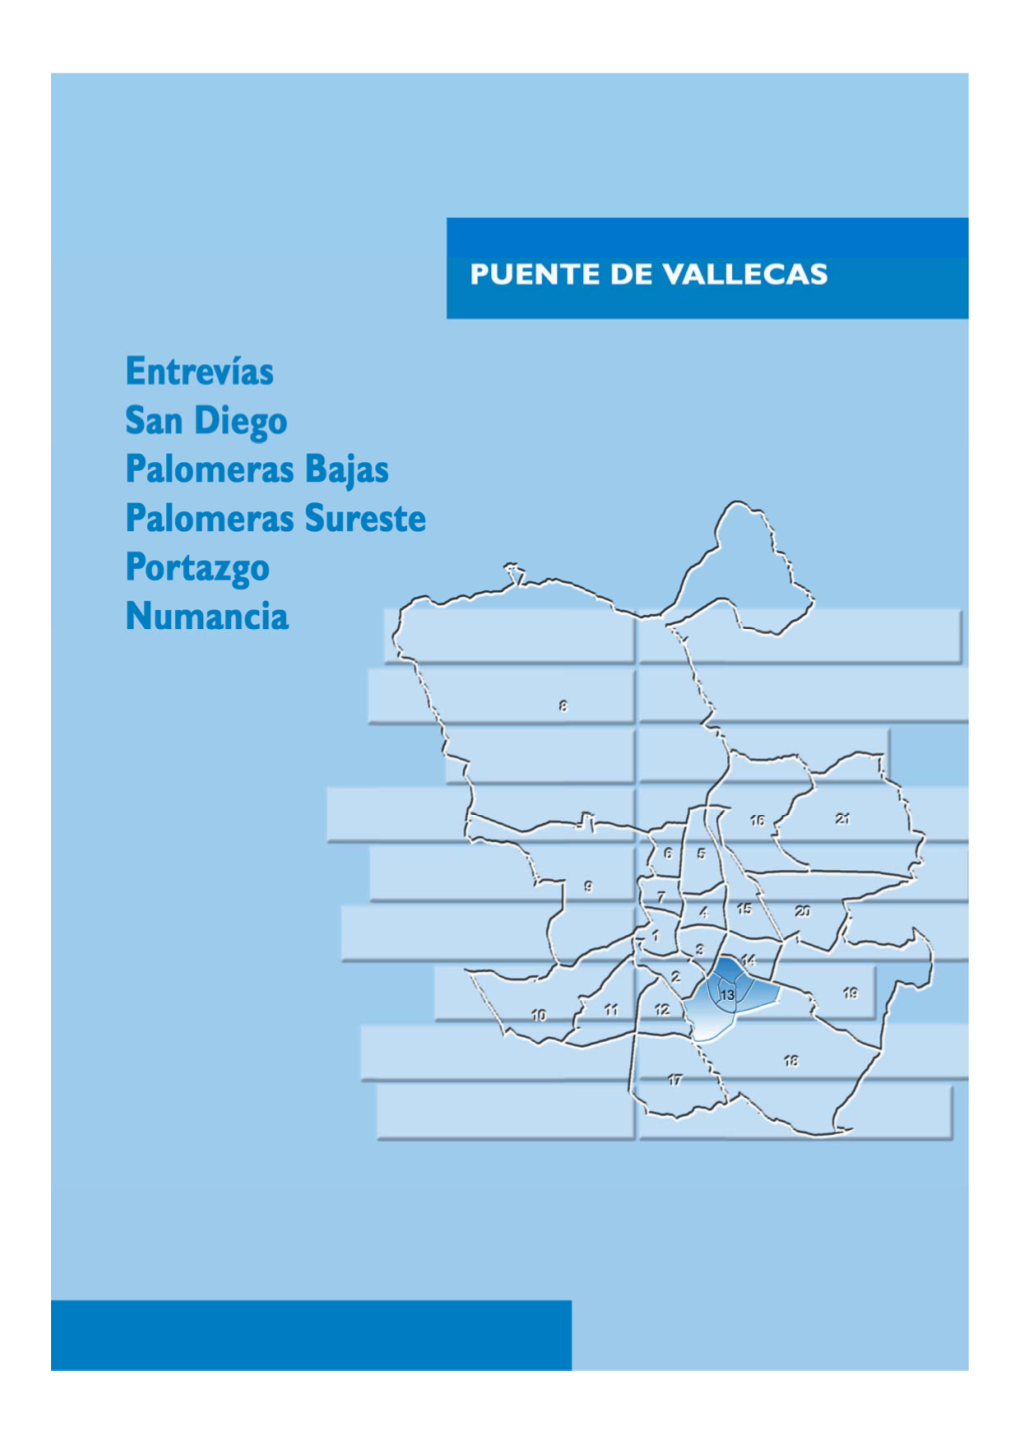 Distrito 13 - Puente De Vallecas Ü 033 144 143 192 146 143 142 026 031 032 145 136 141 025 027 191